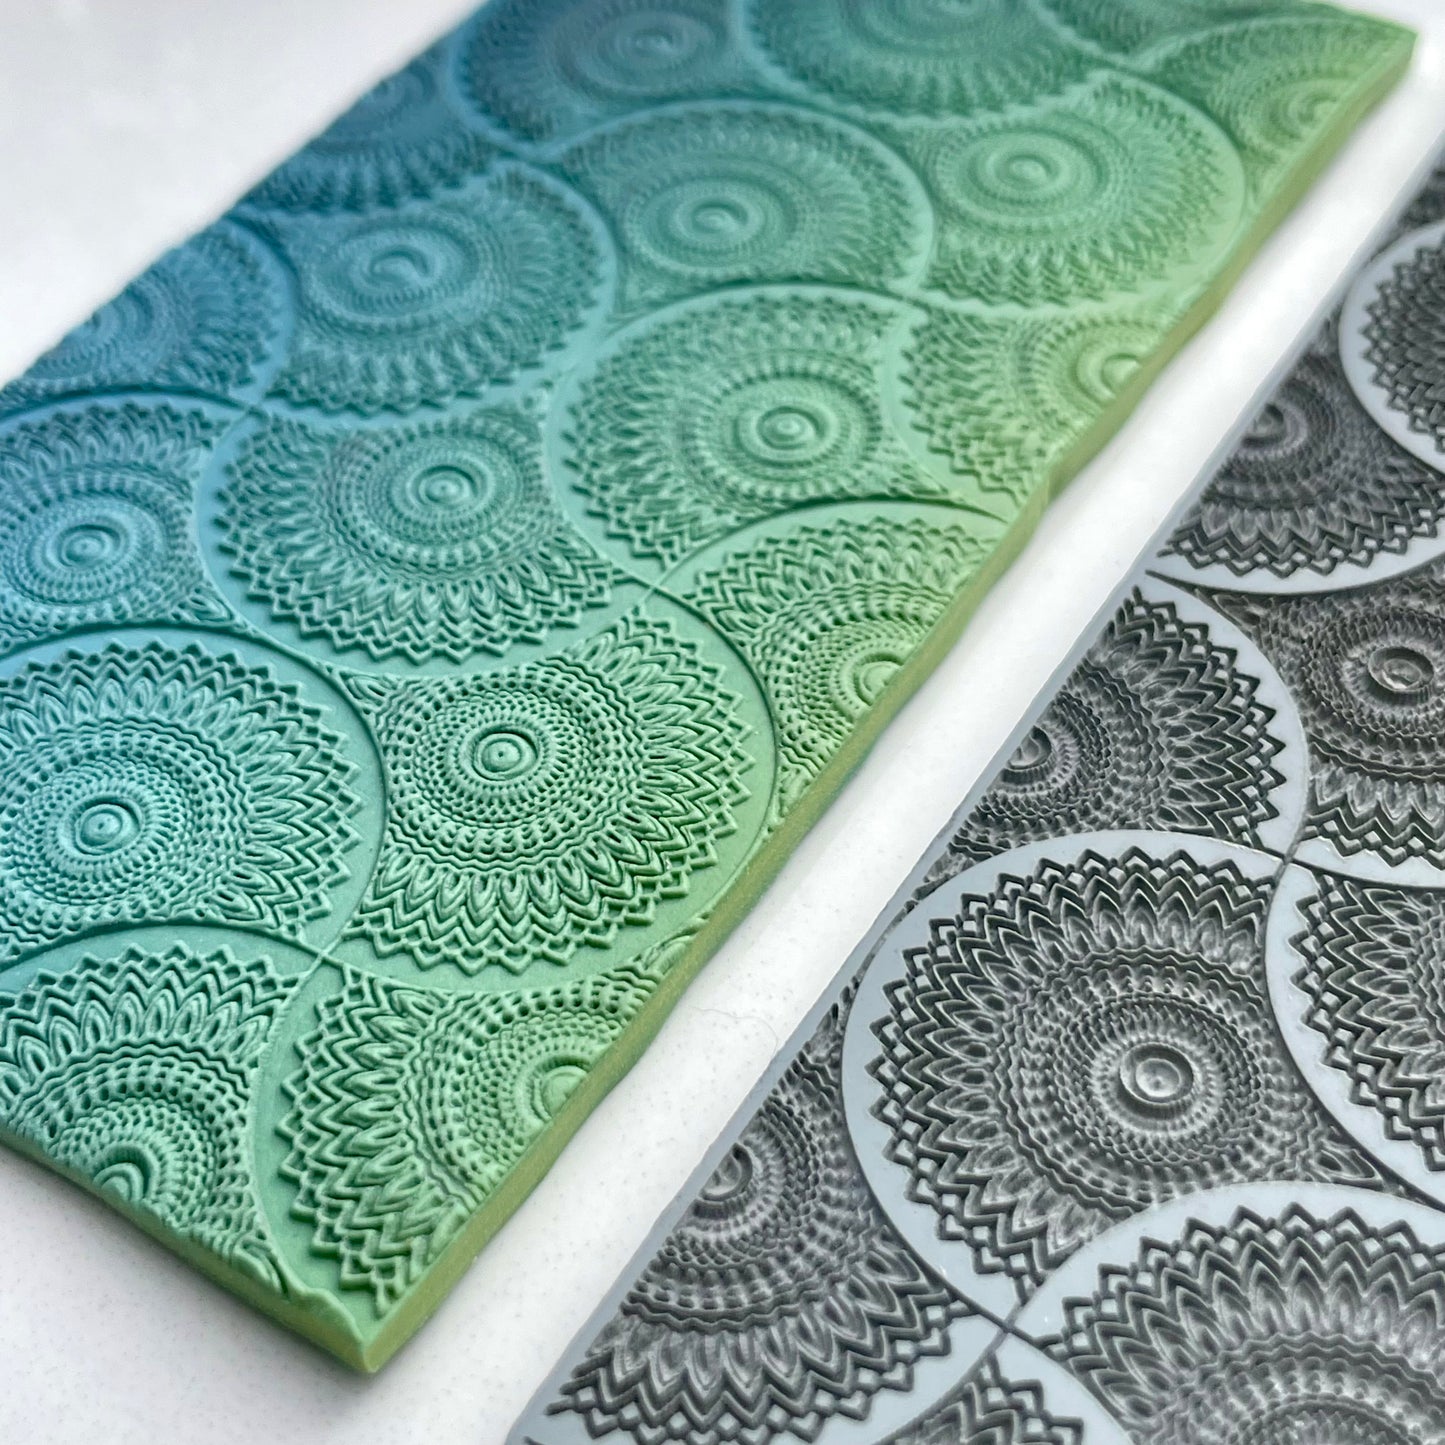 Mandala pattern #1 texture mat